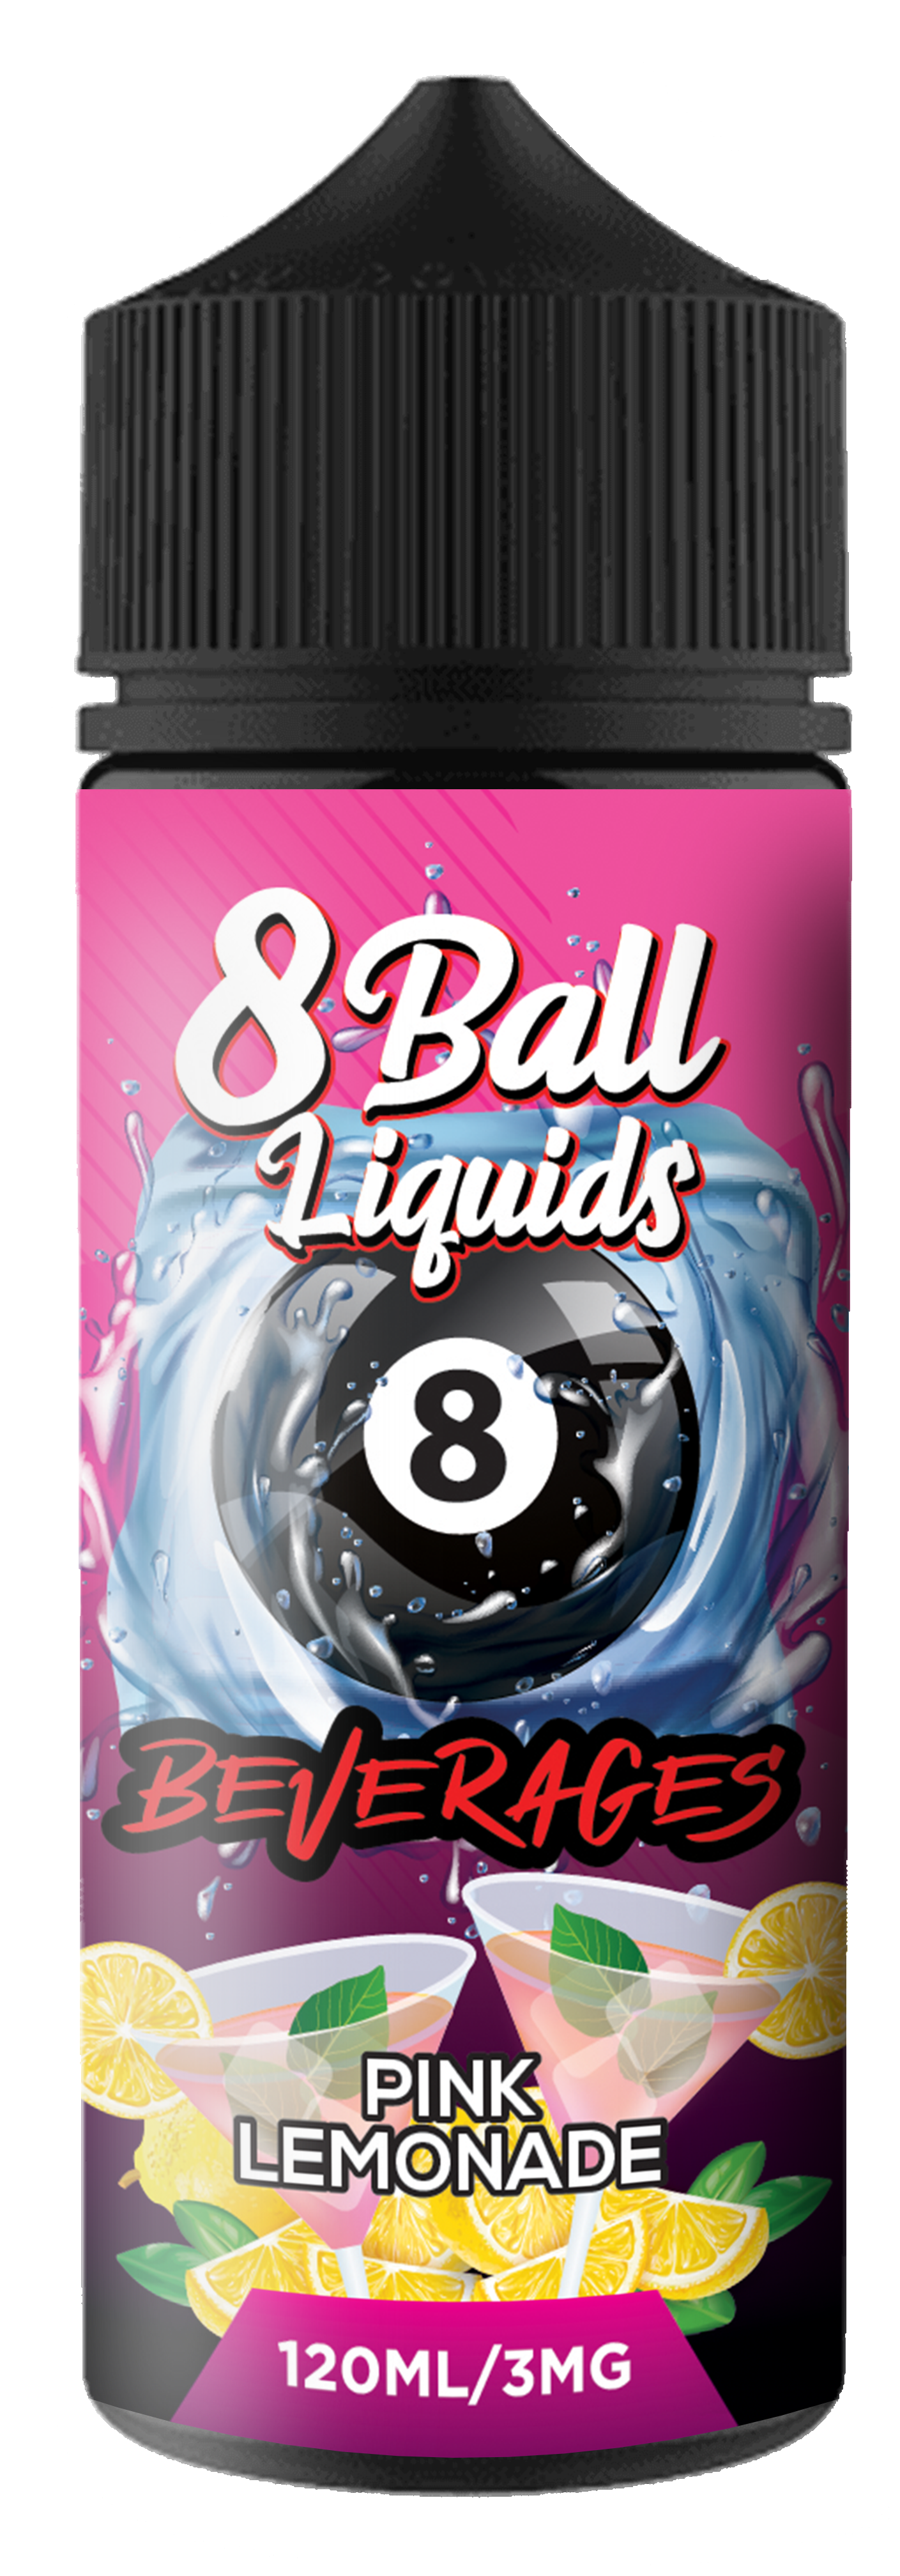 Beverages | Pink Lemonade by 8 Ball Liquids 120ml